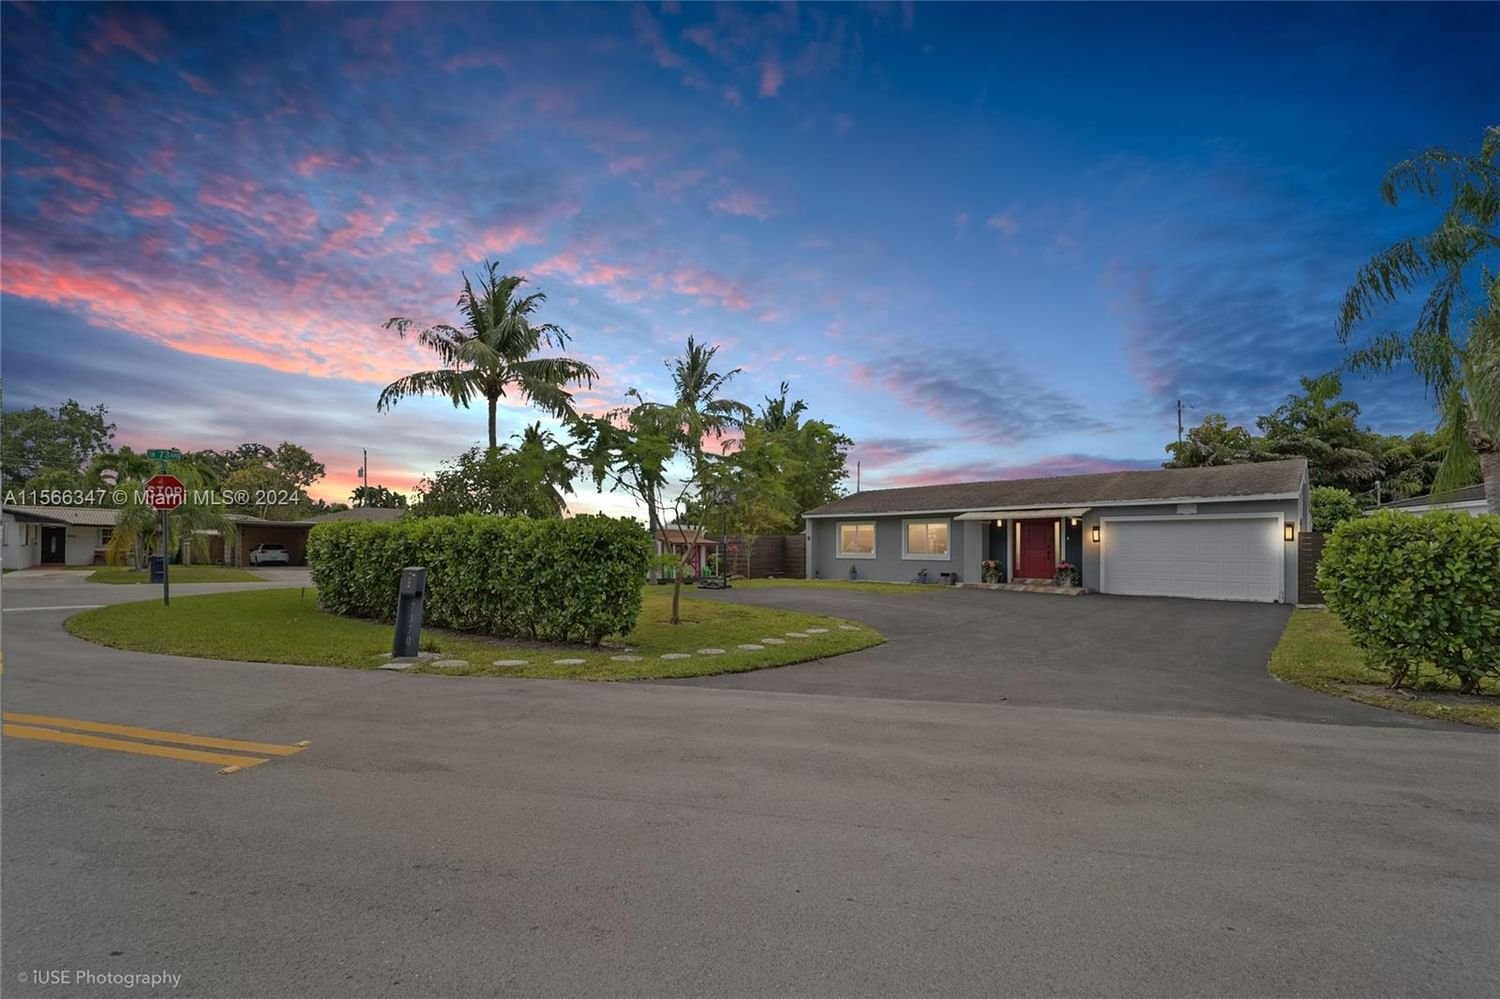 Real estate property located at 7370 34th St, Miami-Dade County, CENTRAL MIAMI PT 6, Miami, FL